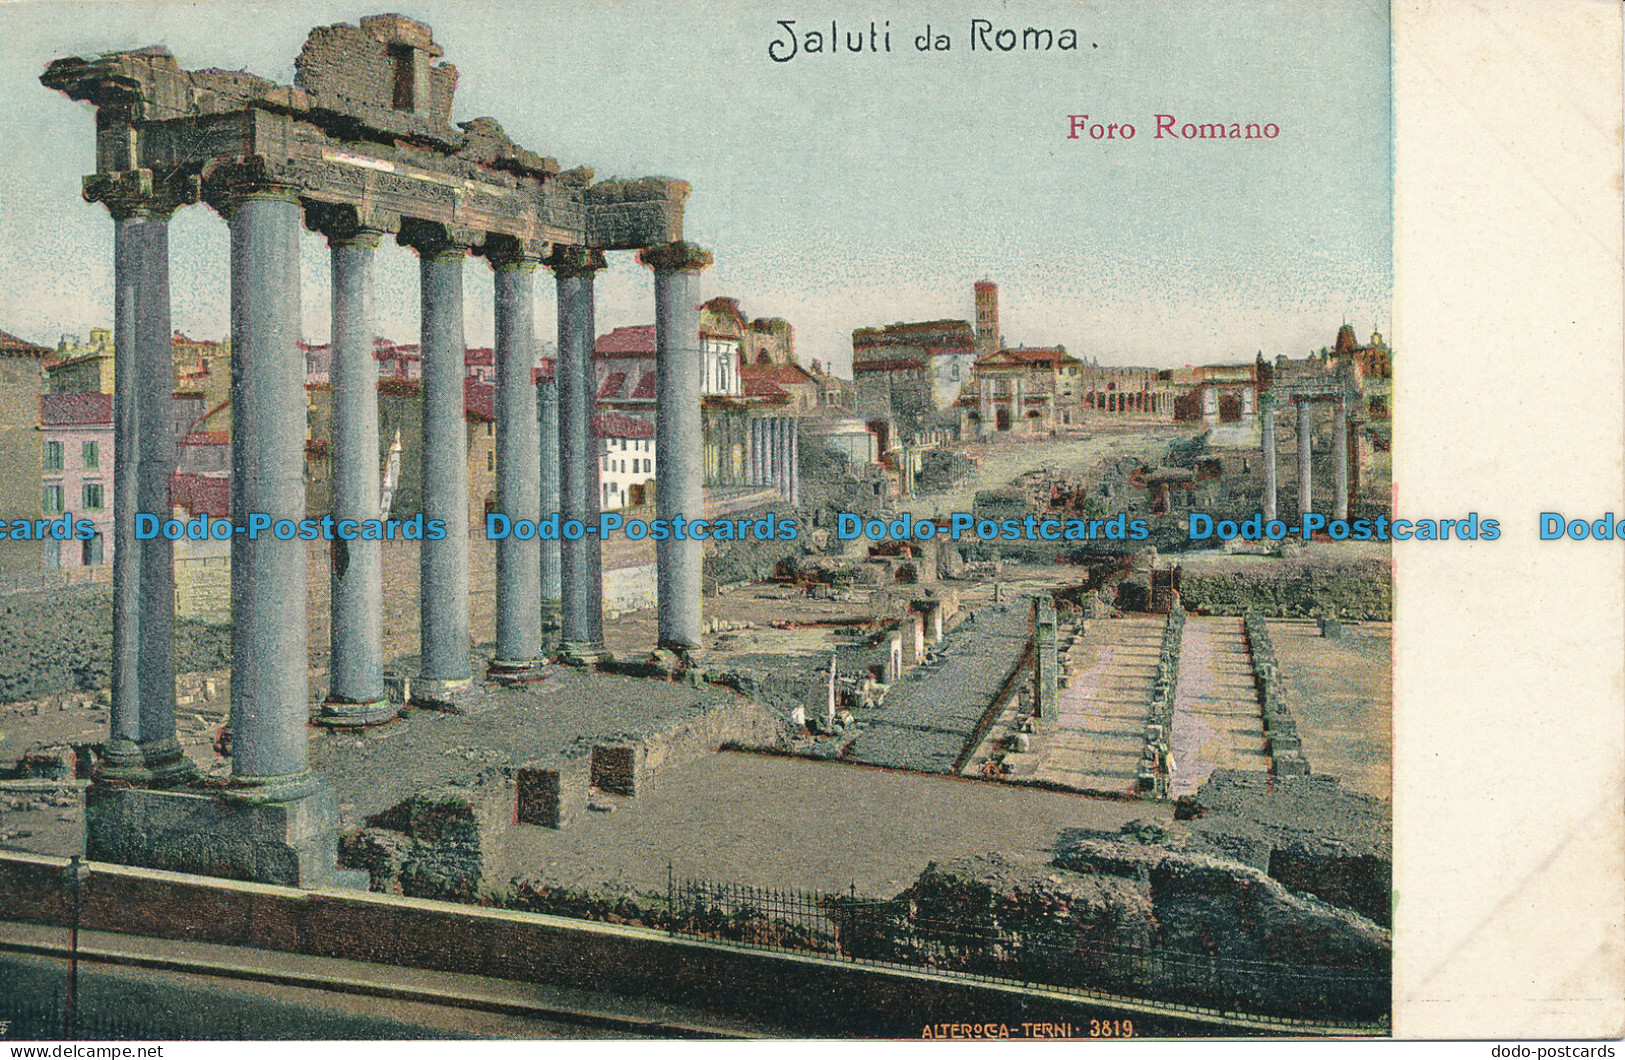 R038545 Saluti Da Roma. Foro Romano. B. Hopkins - World